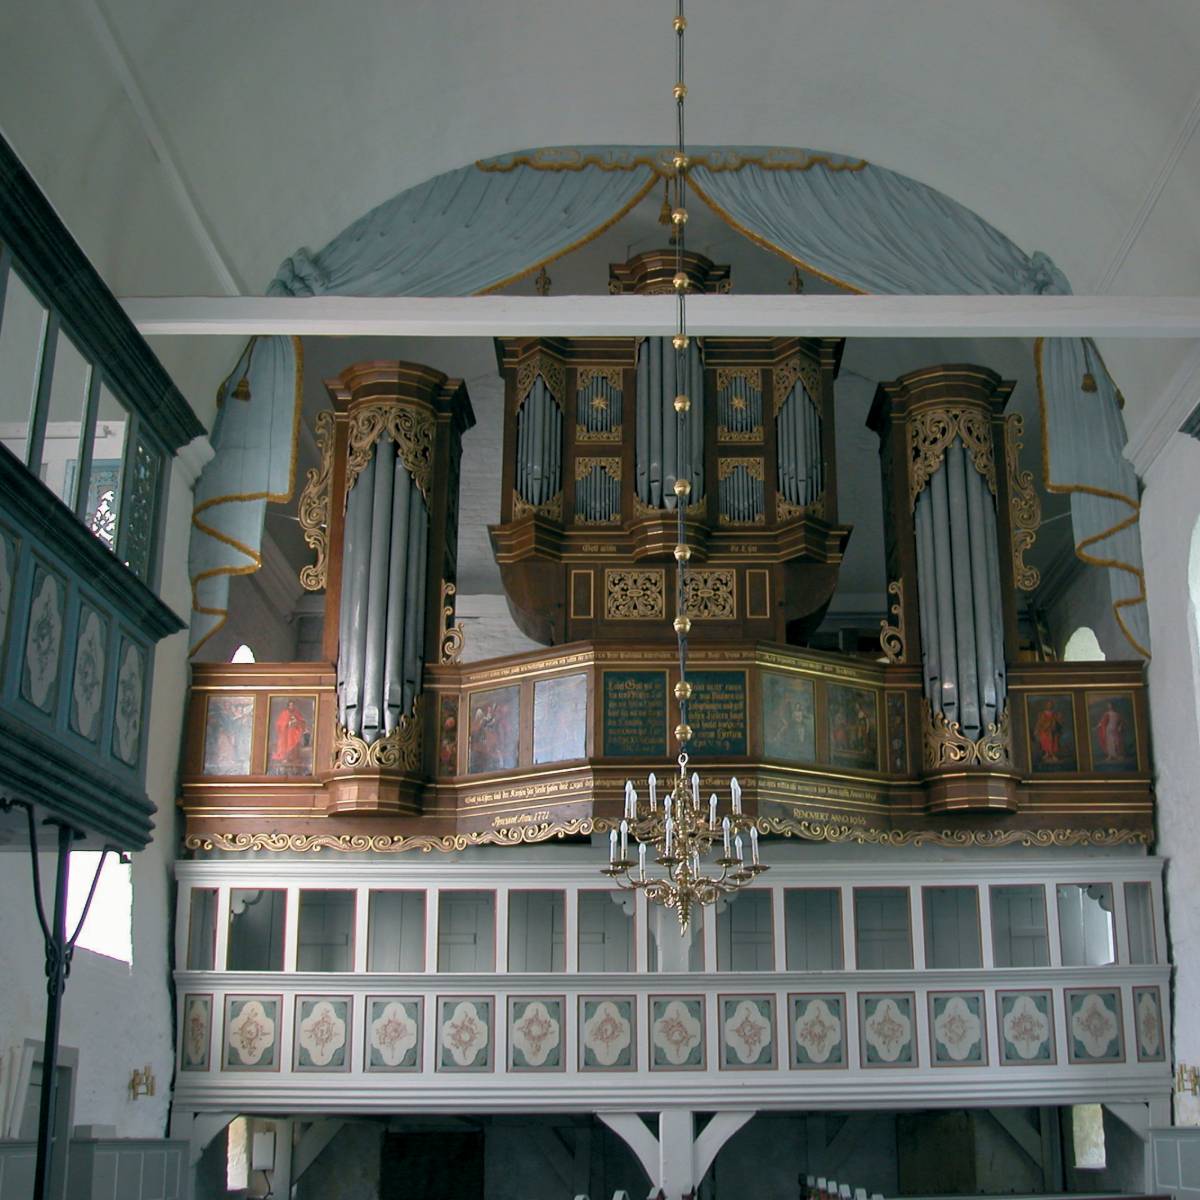 Foto der Schnitger Orgel in Steinkirchen. Die Orgel wird von einer hellblau bemalten Stuckarbeit umrahmt, die einen theaterähnlichen Vorhang darstellt. Das Blau findet sich auch im Altar, der Kanzel und den Emporen wieder..